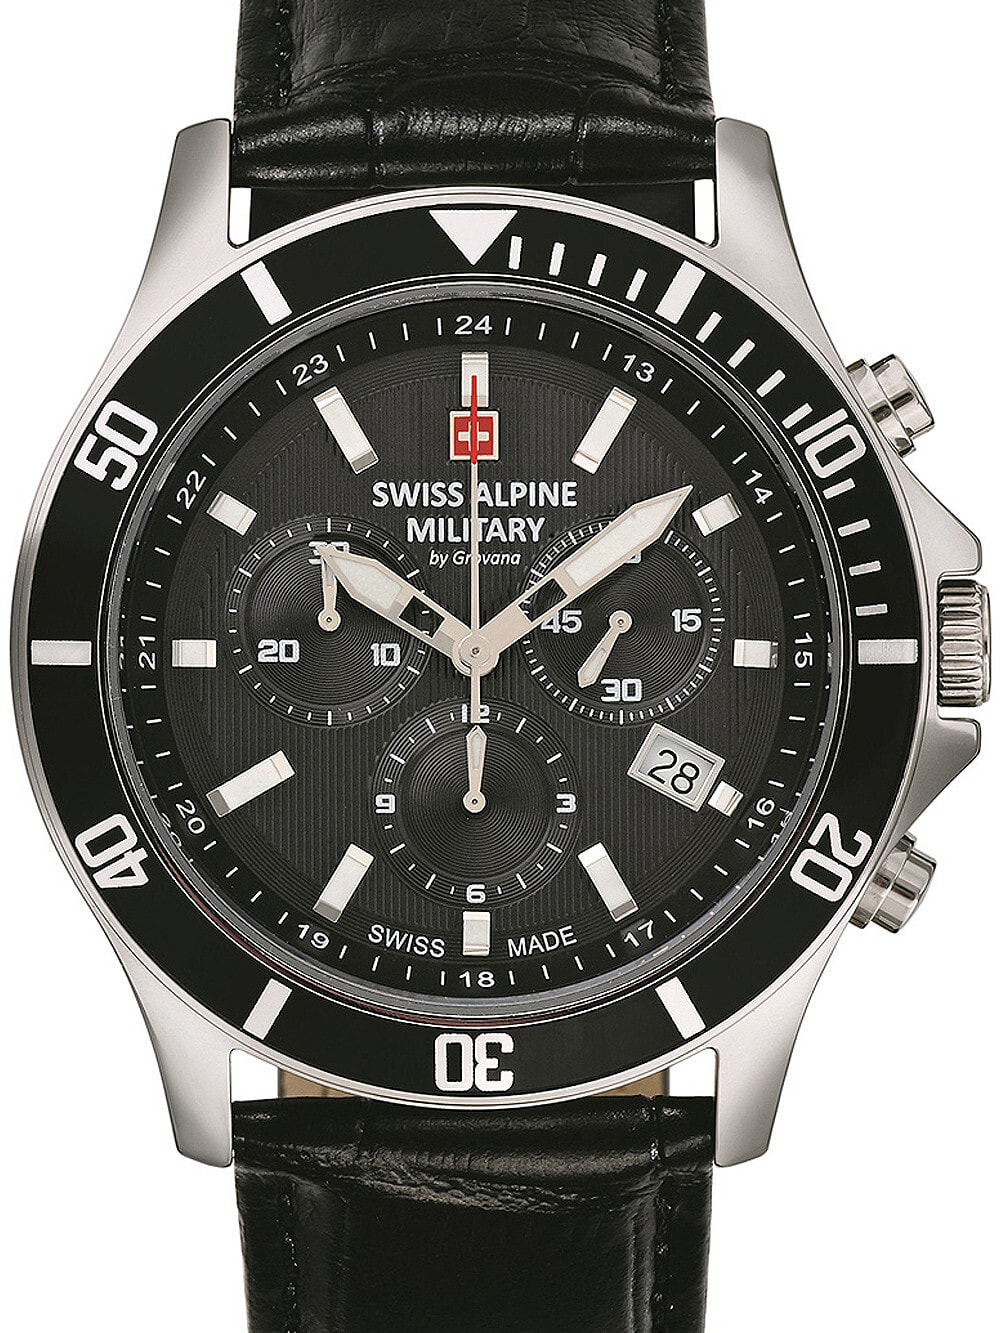 Мужские наручные часы с черным кожаным ремешком  Swiss Alpine Military 7022.9537 chronograph 42mm 10ATM